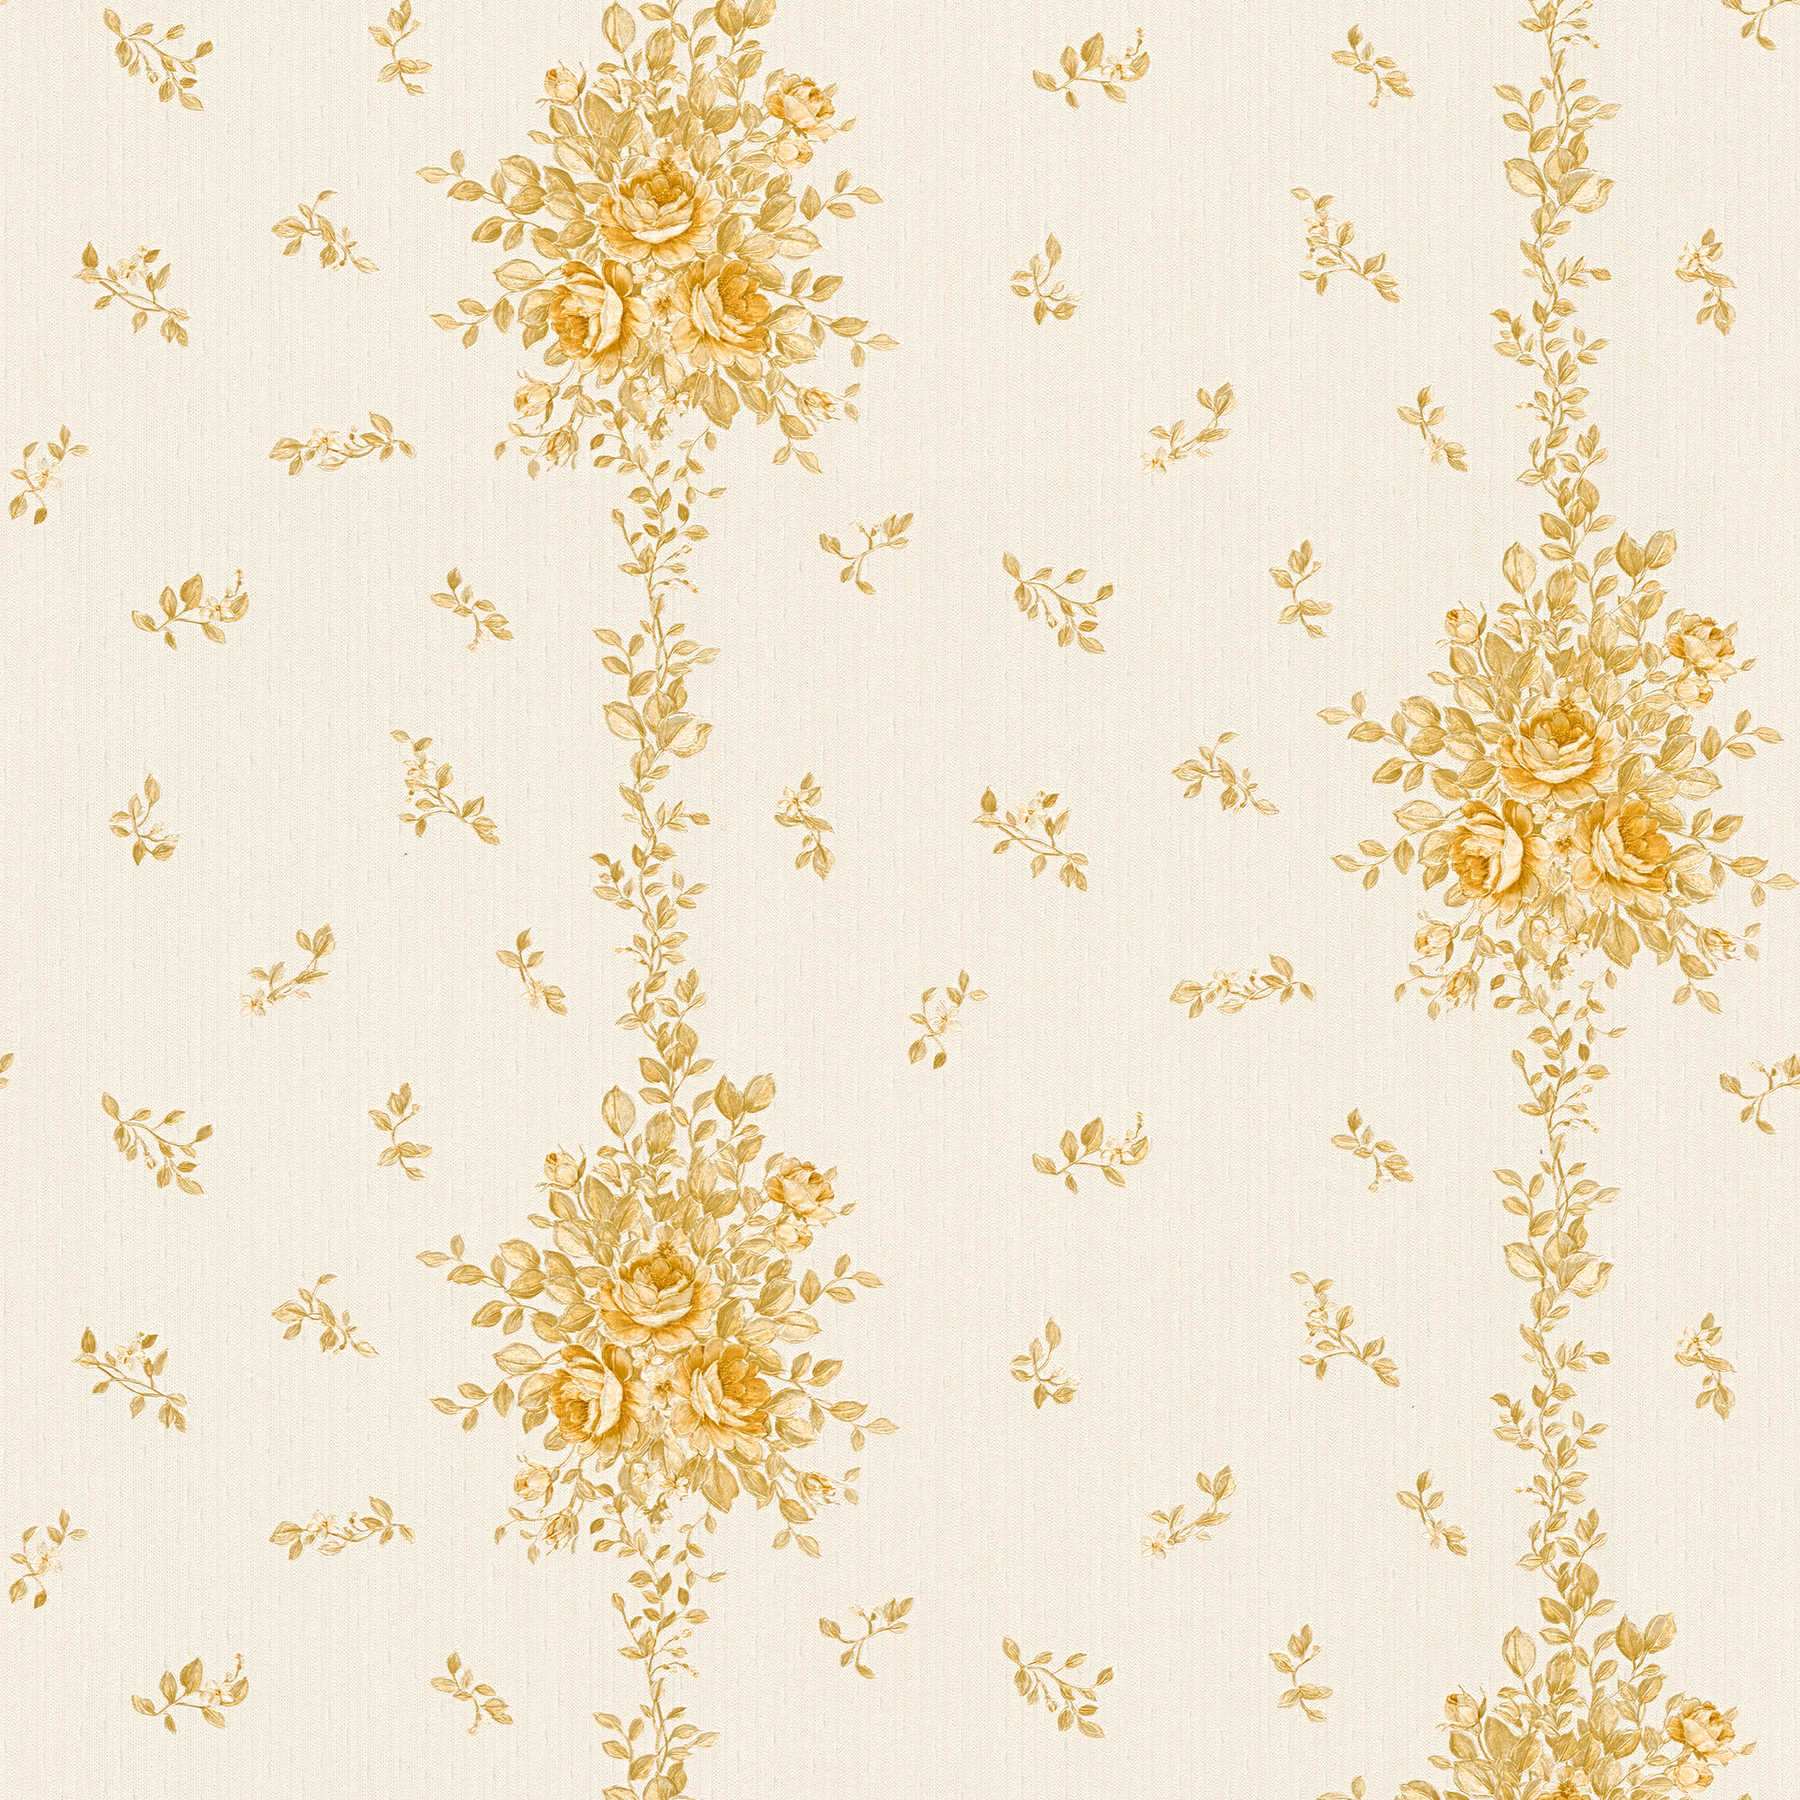         Florale Tapete Blumenmuster in Metallic-Gold – Creme
    